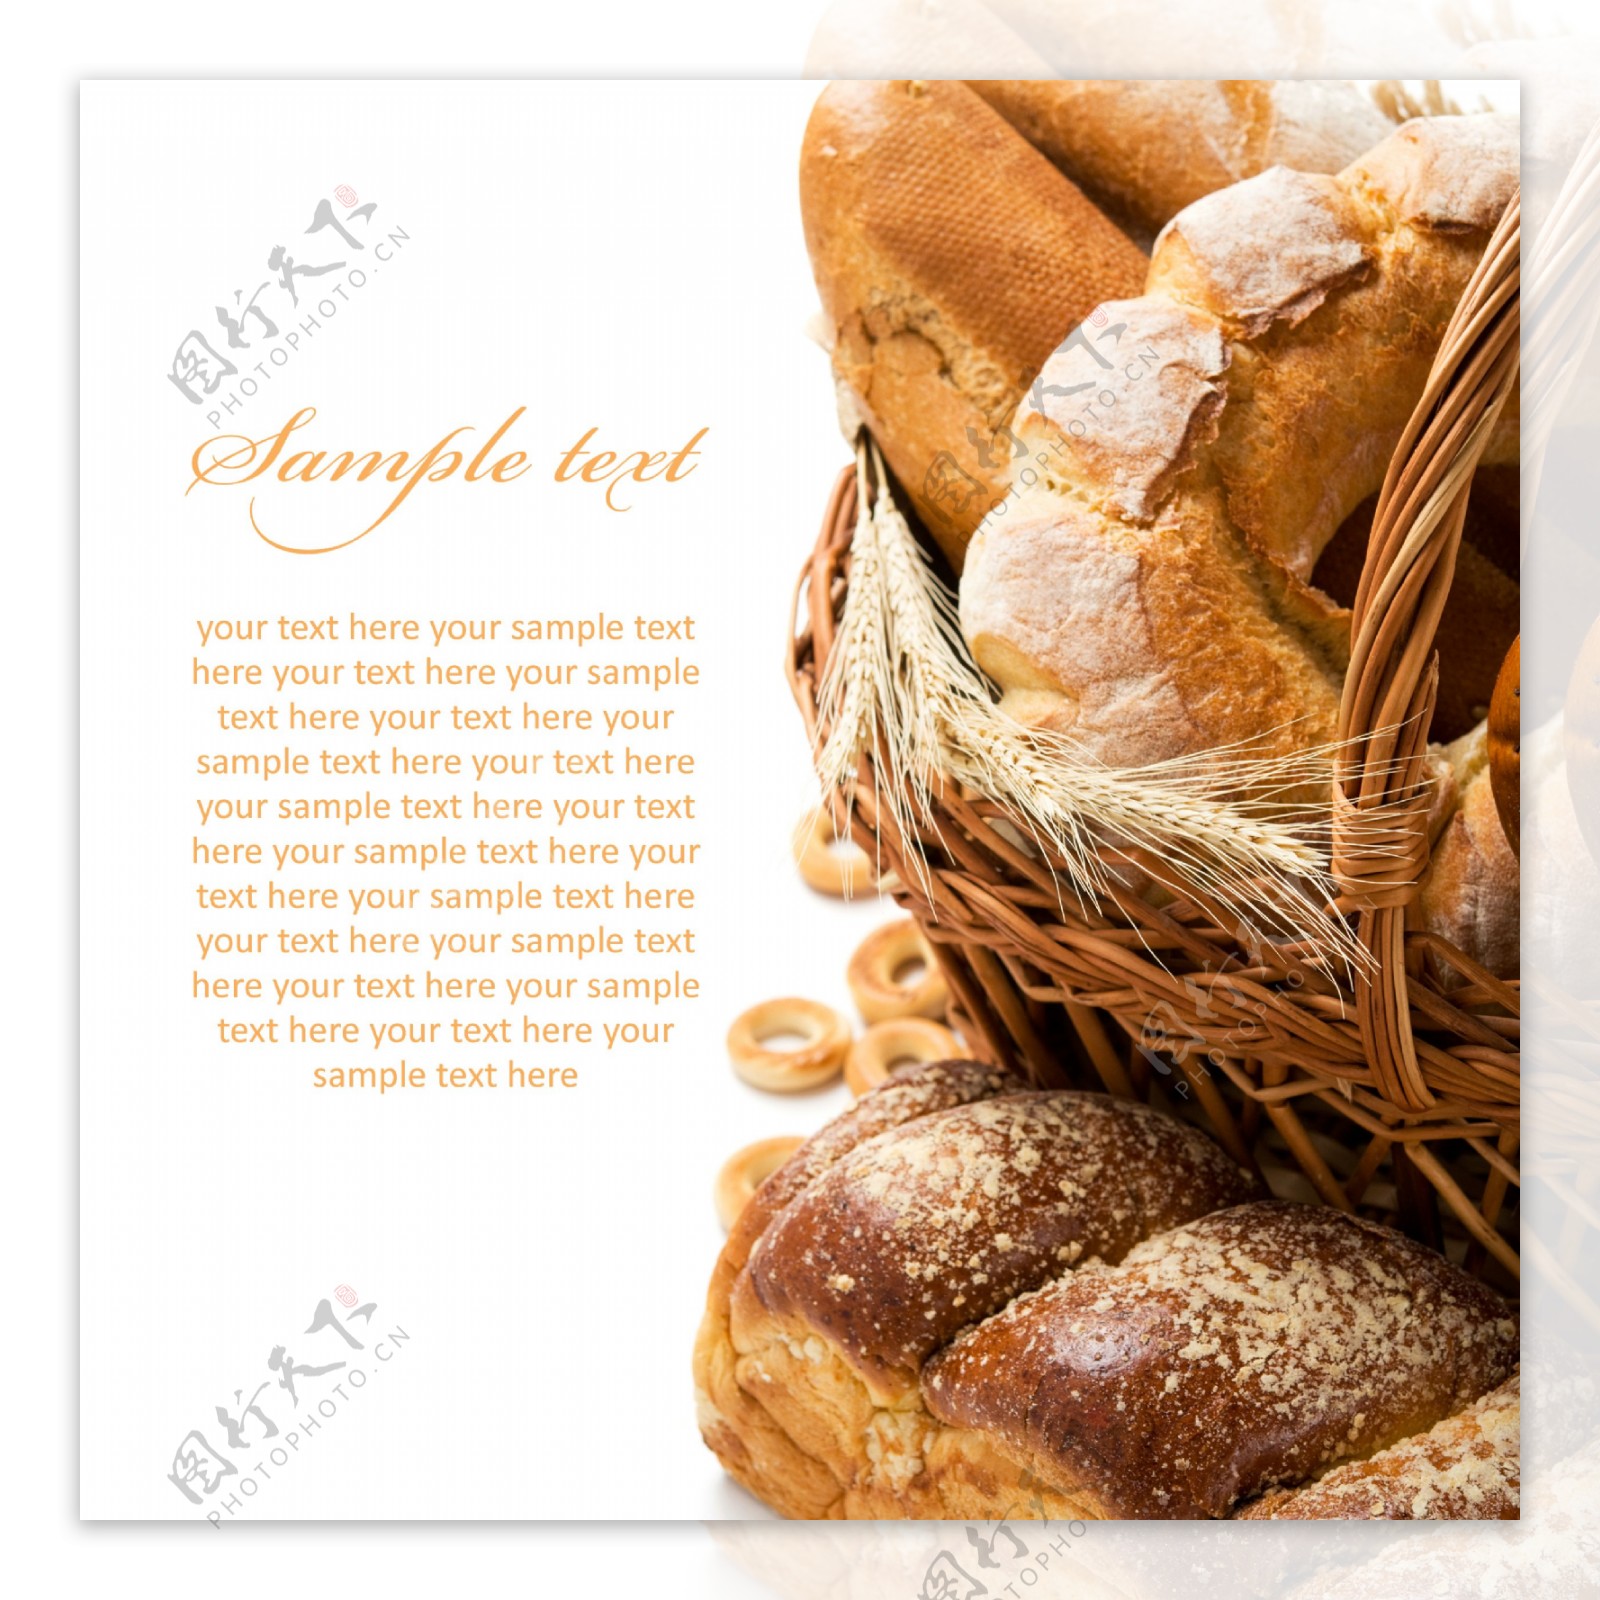 小麦与面包摄影